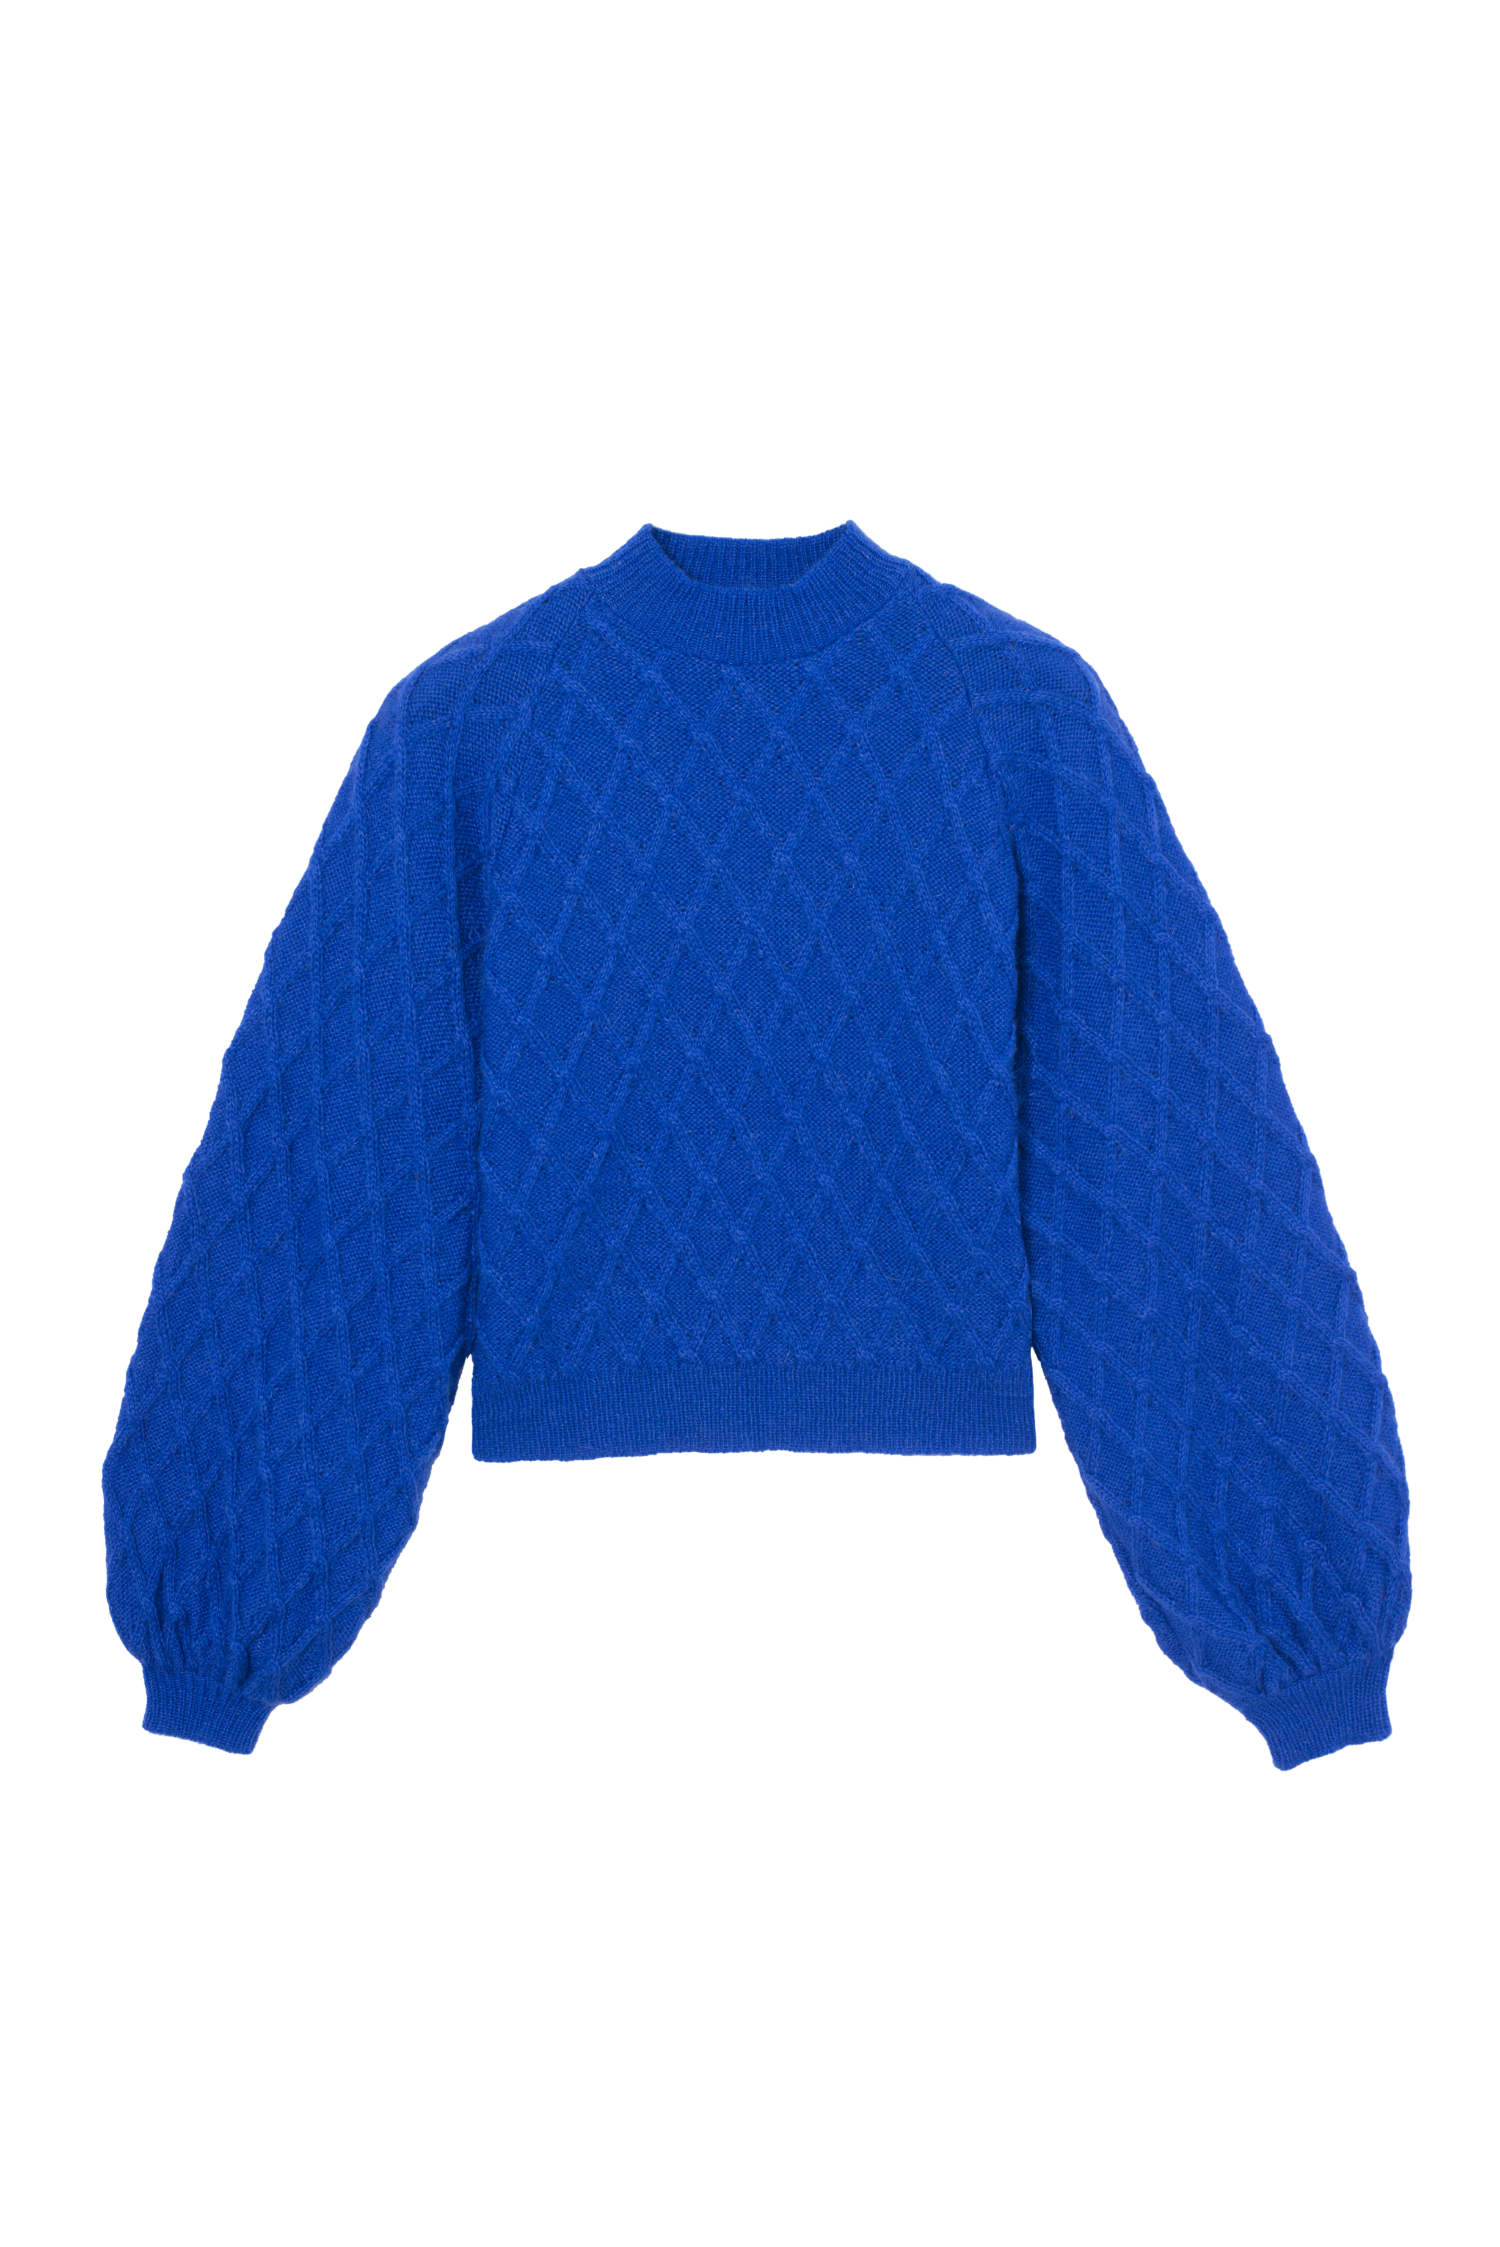 Parisienne et Alors Blue Sweater